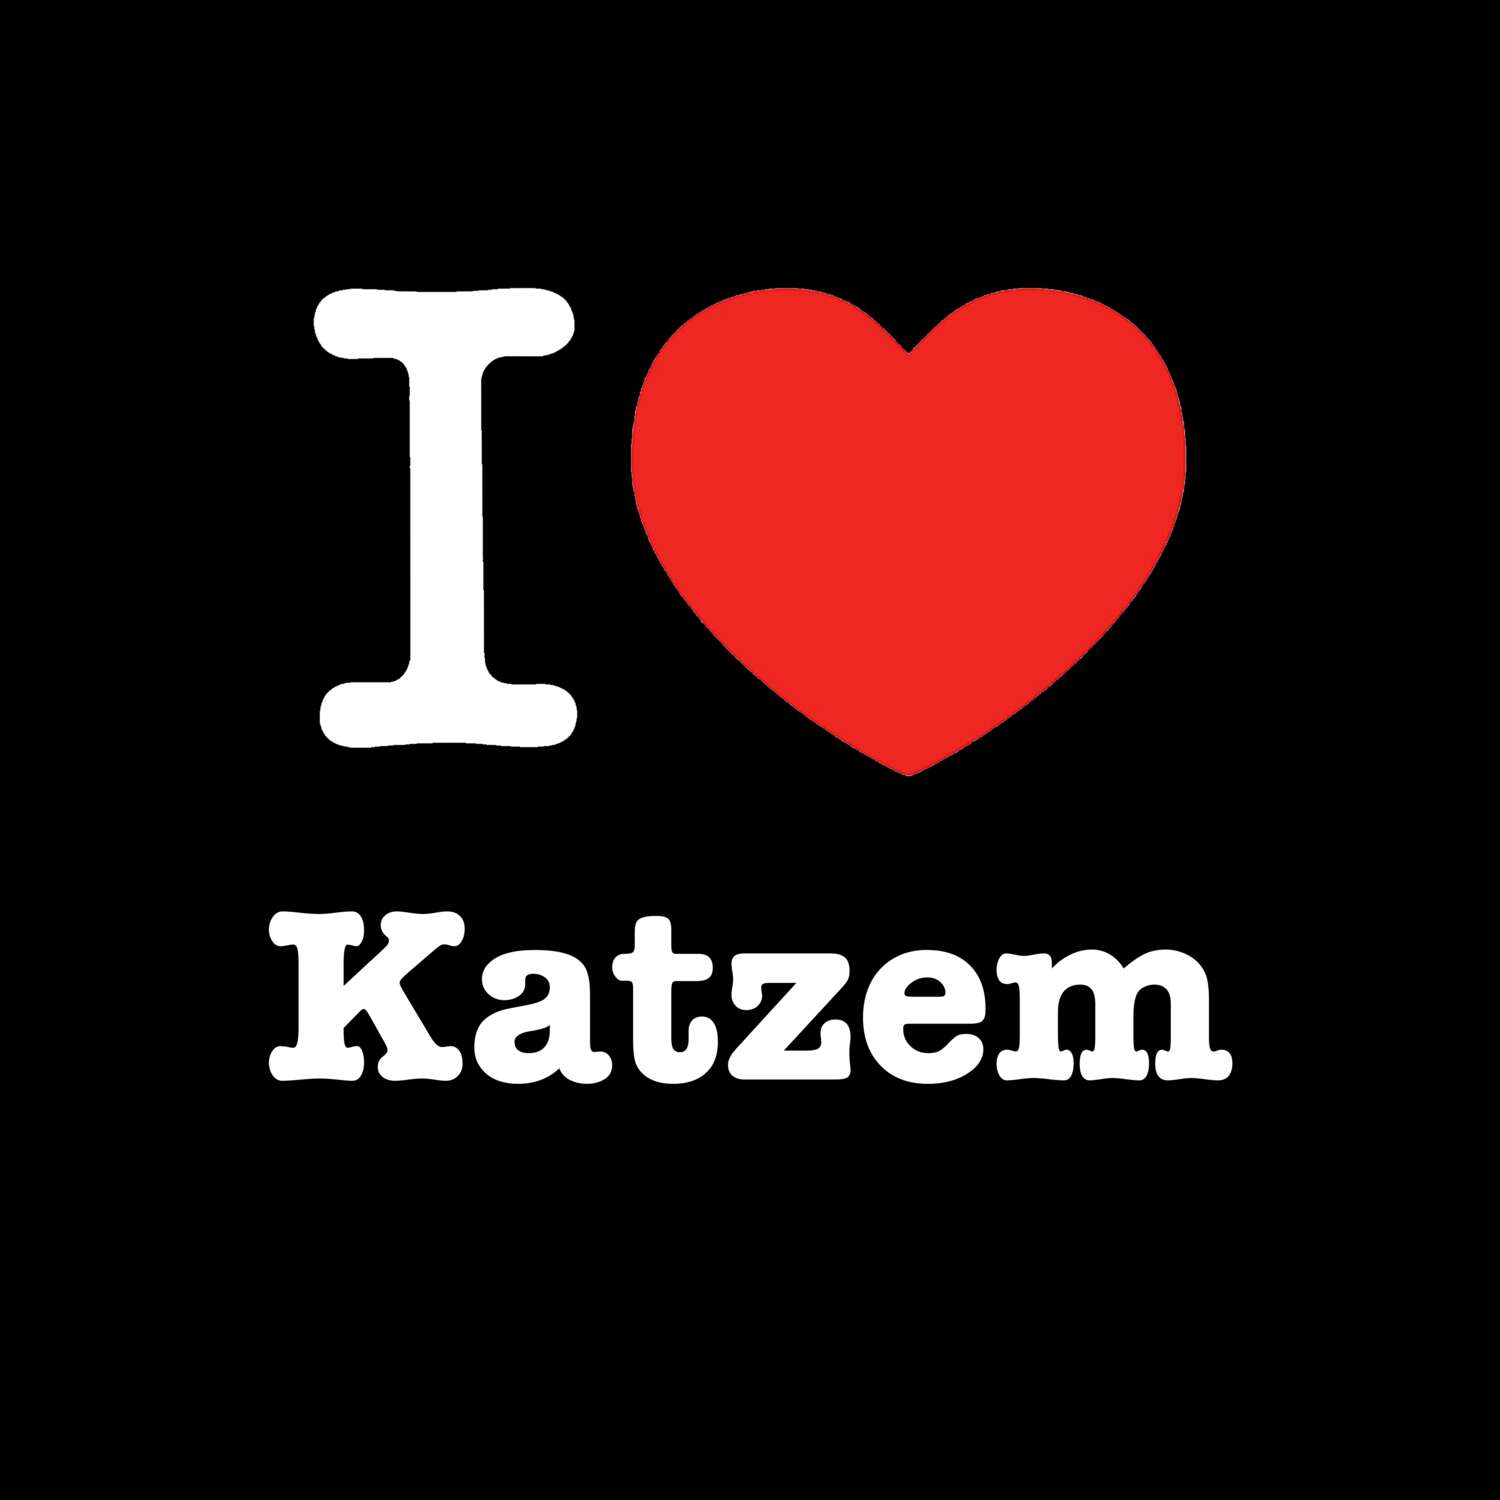 Katzem T-Shirt »I love«